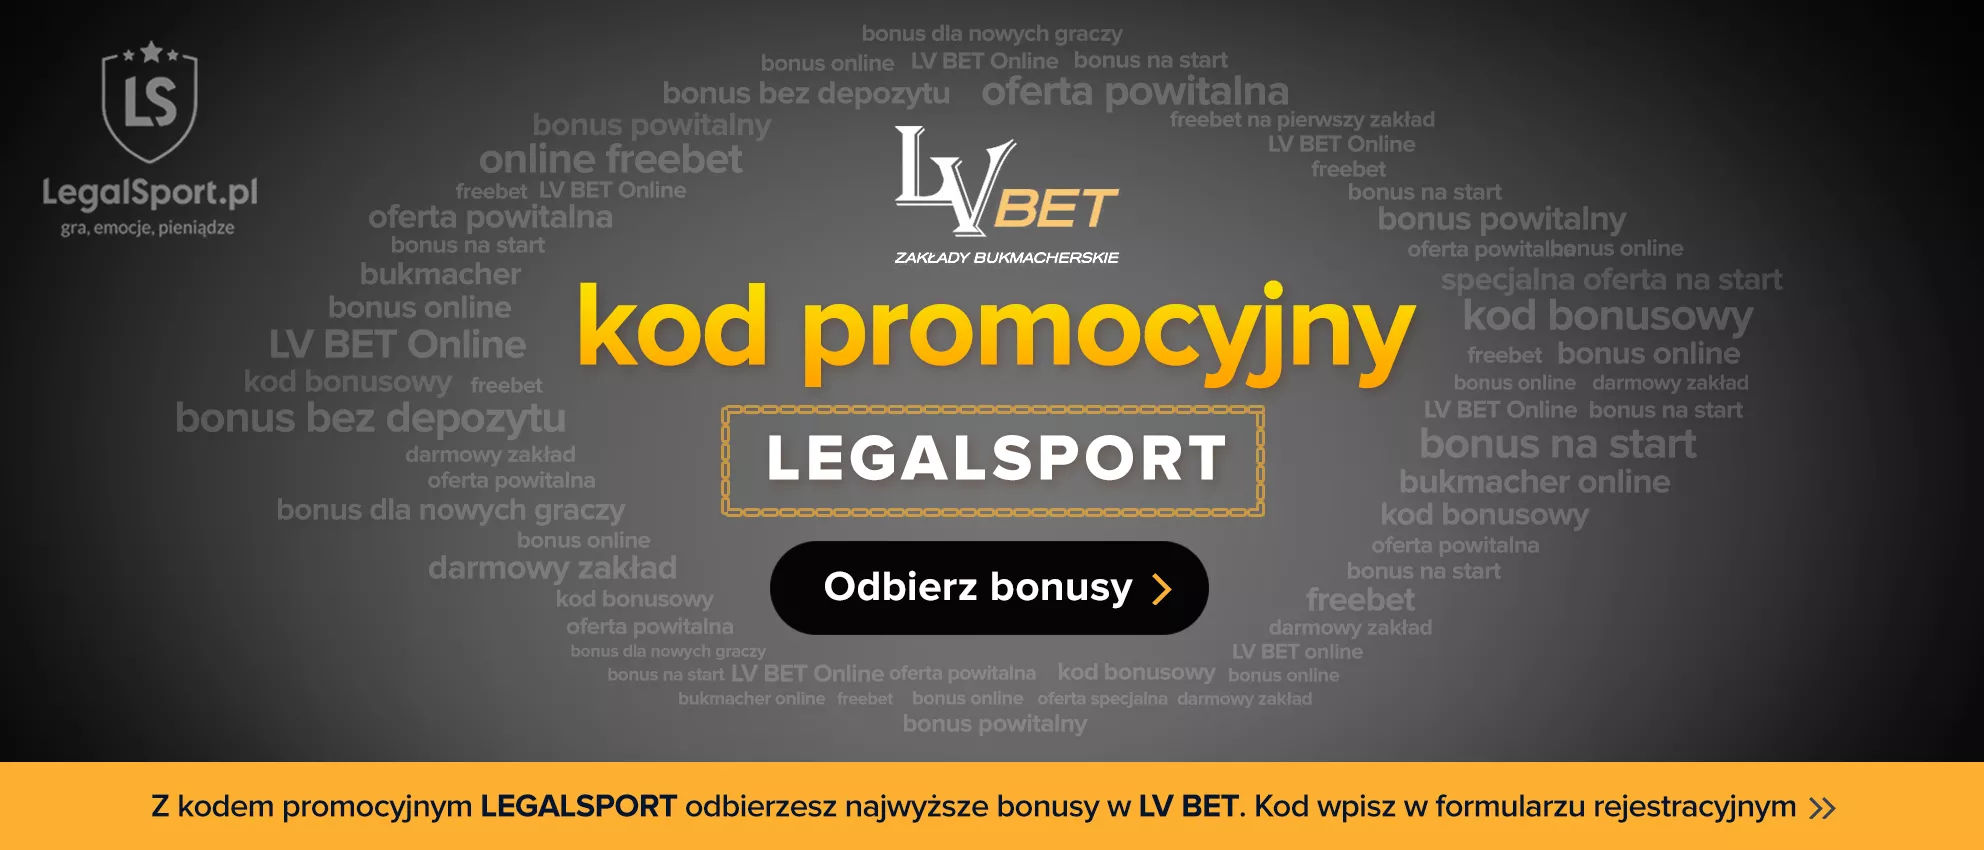 Wykorzystaj kod bonusowy LEGALSPORT i zgarnij extra freebet 20 zł w LV BET!